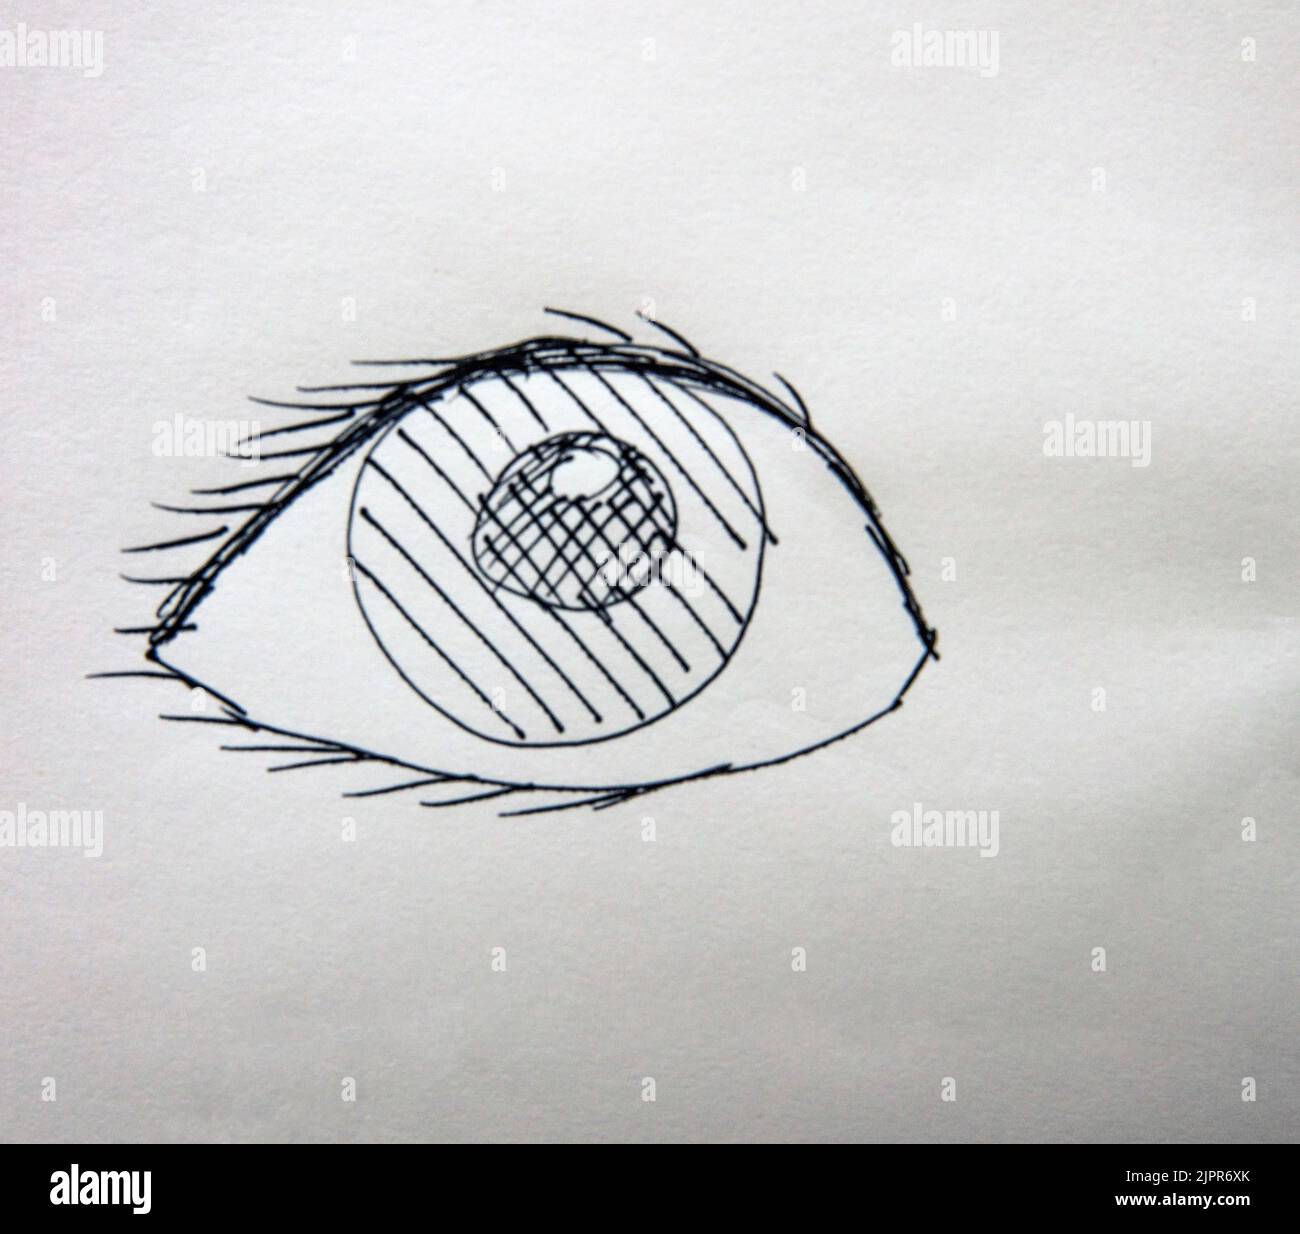 Doodle-Zeichnung eines Auges mit schwarzer Tinte auf weißem Papier Stockfoto